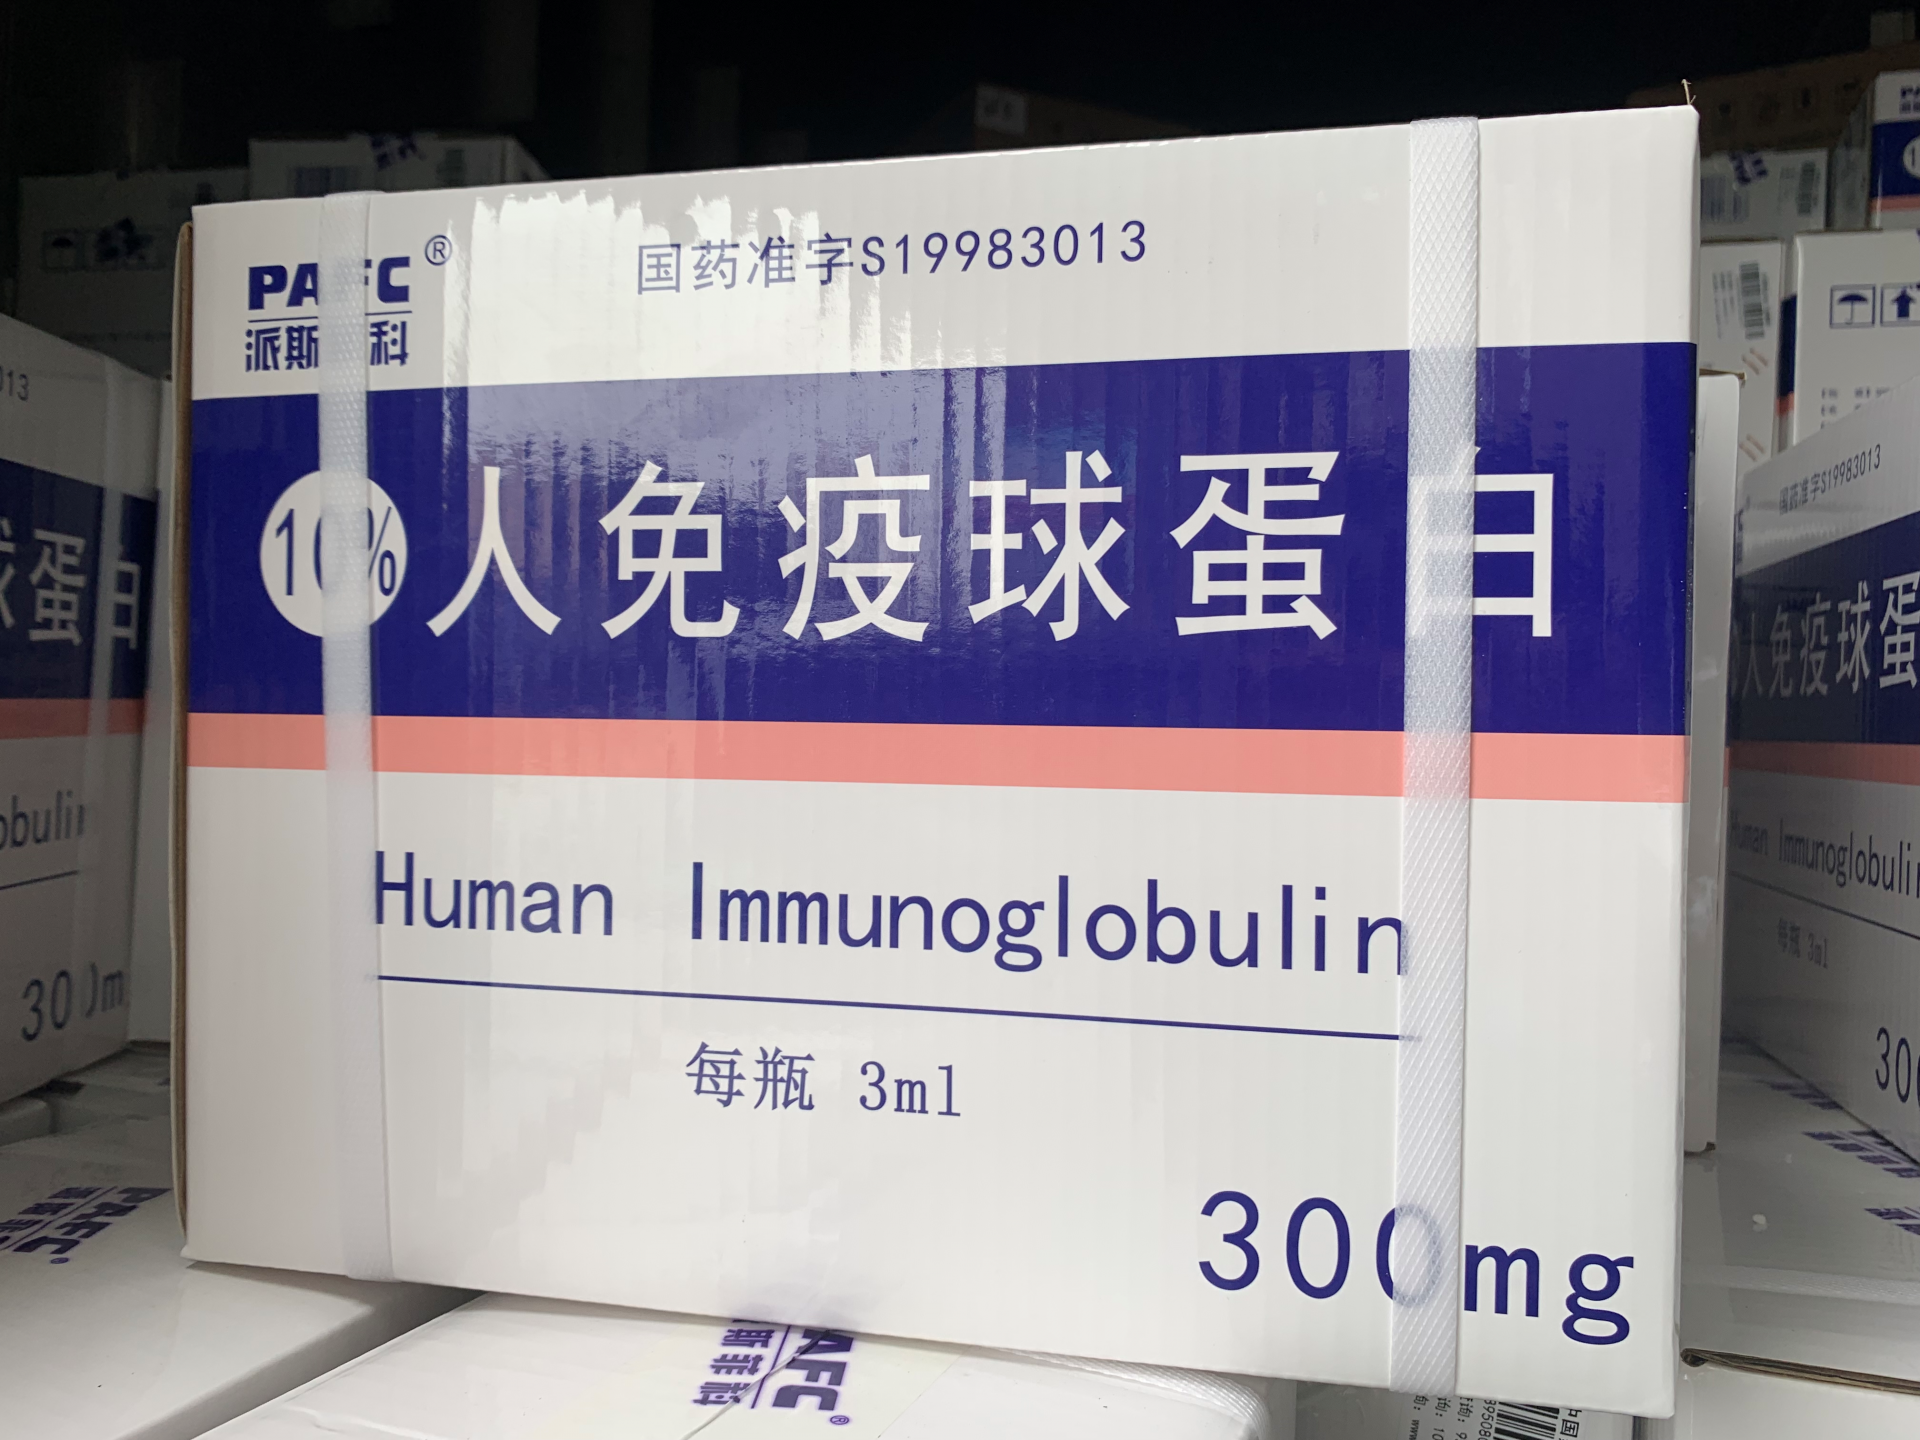 哈尔滨企业向我市捐赠5万支人免疫球蛋白